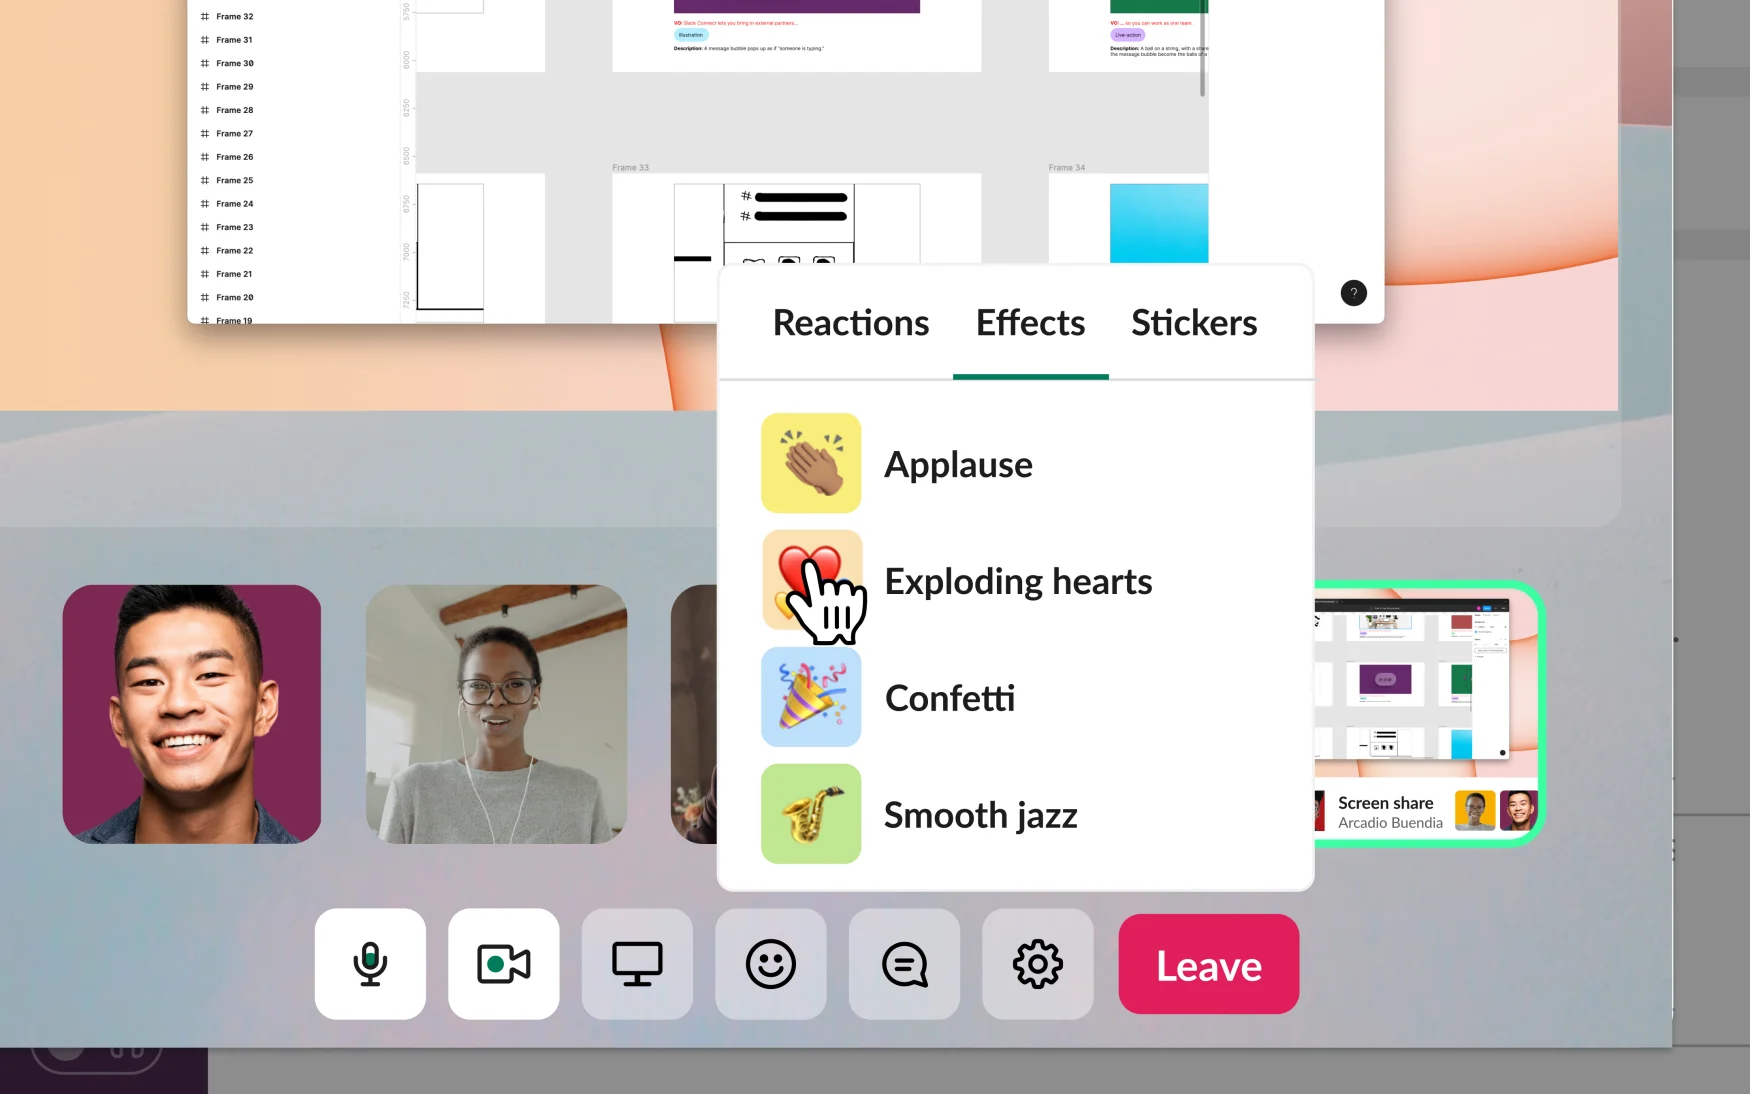 Slack là nền tảng đáng tin cậy cho video và chia sẻ màn hình. Đó là cách tốt nhất để làm việc với đồng nghiệp từ xa và giải quyết các vấn đề liên quan đến công việc. Hãy xem hình ảnh liên quan để tìm hiểu thêm về tính năng này.